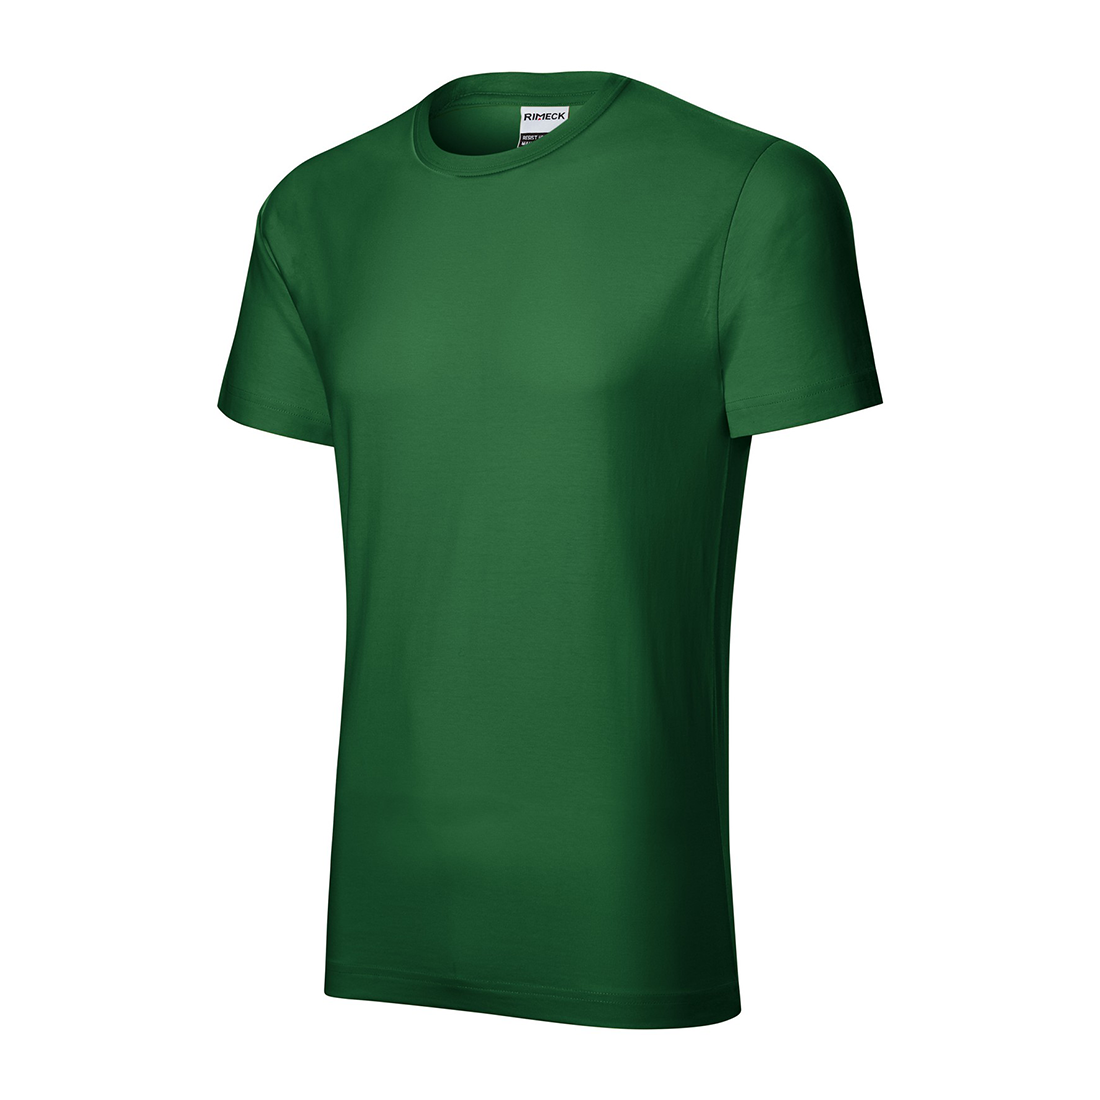 Vorgewaschenes Baumwoll-T-Shirt für Herren - Arbeitskleidung